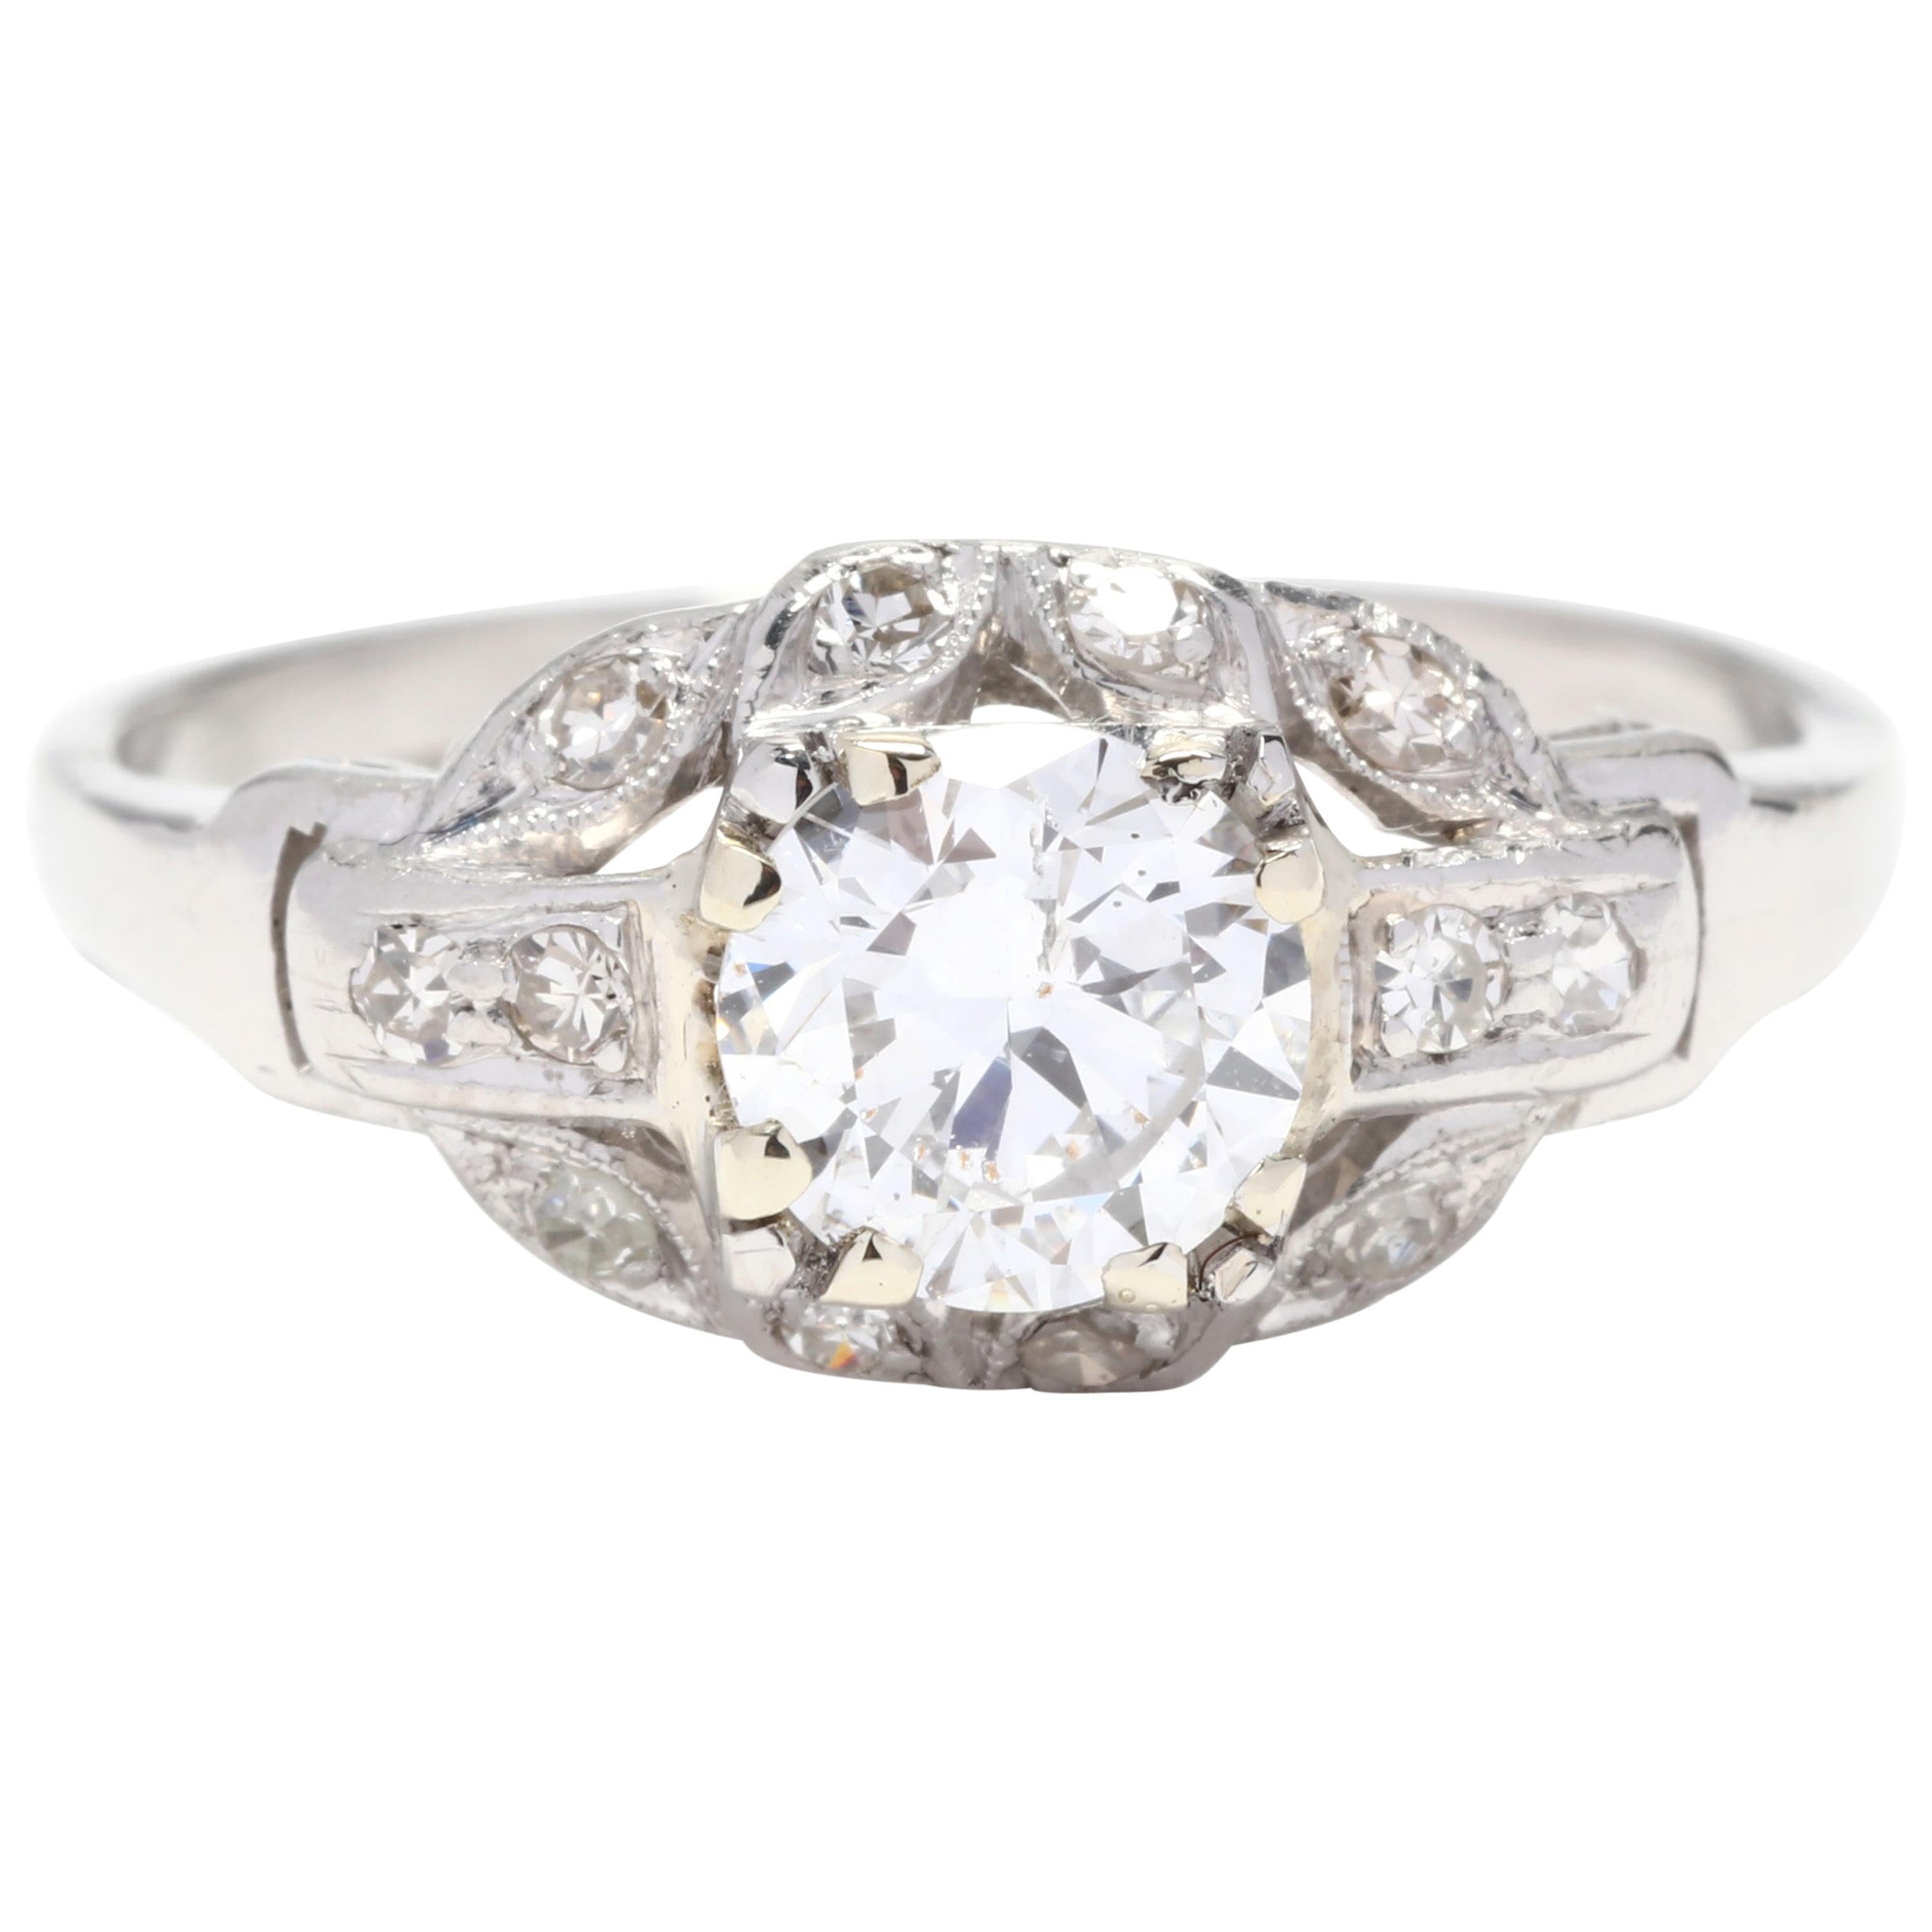 Vintage 14 Karat White Gold and Diamond Engagement Ring